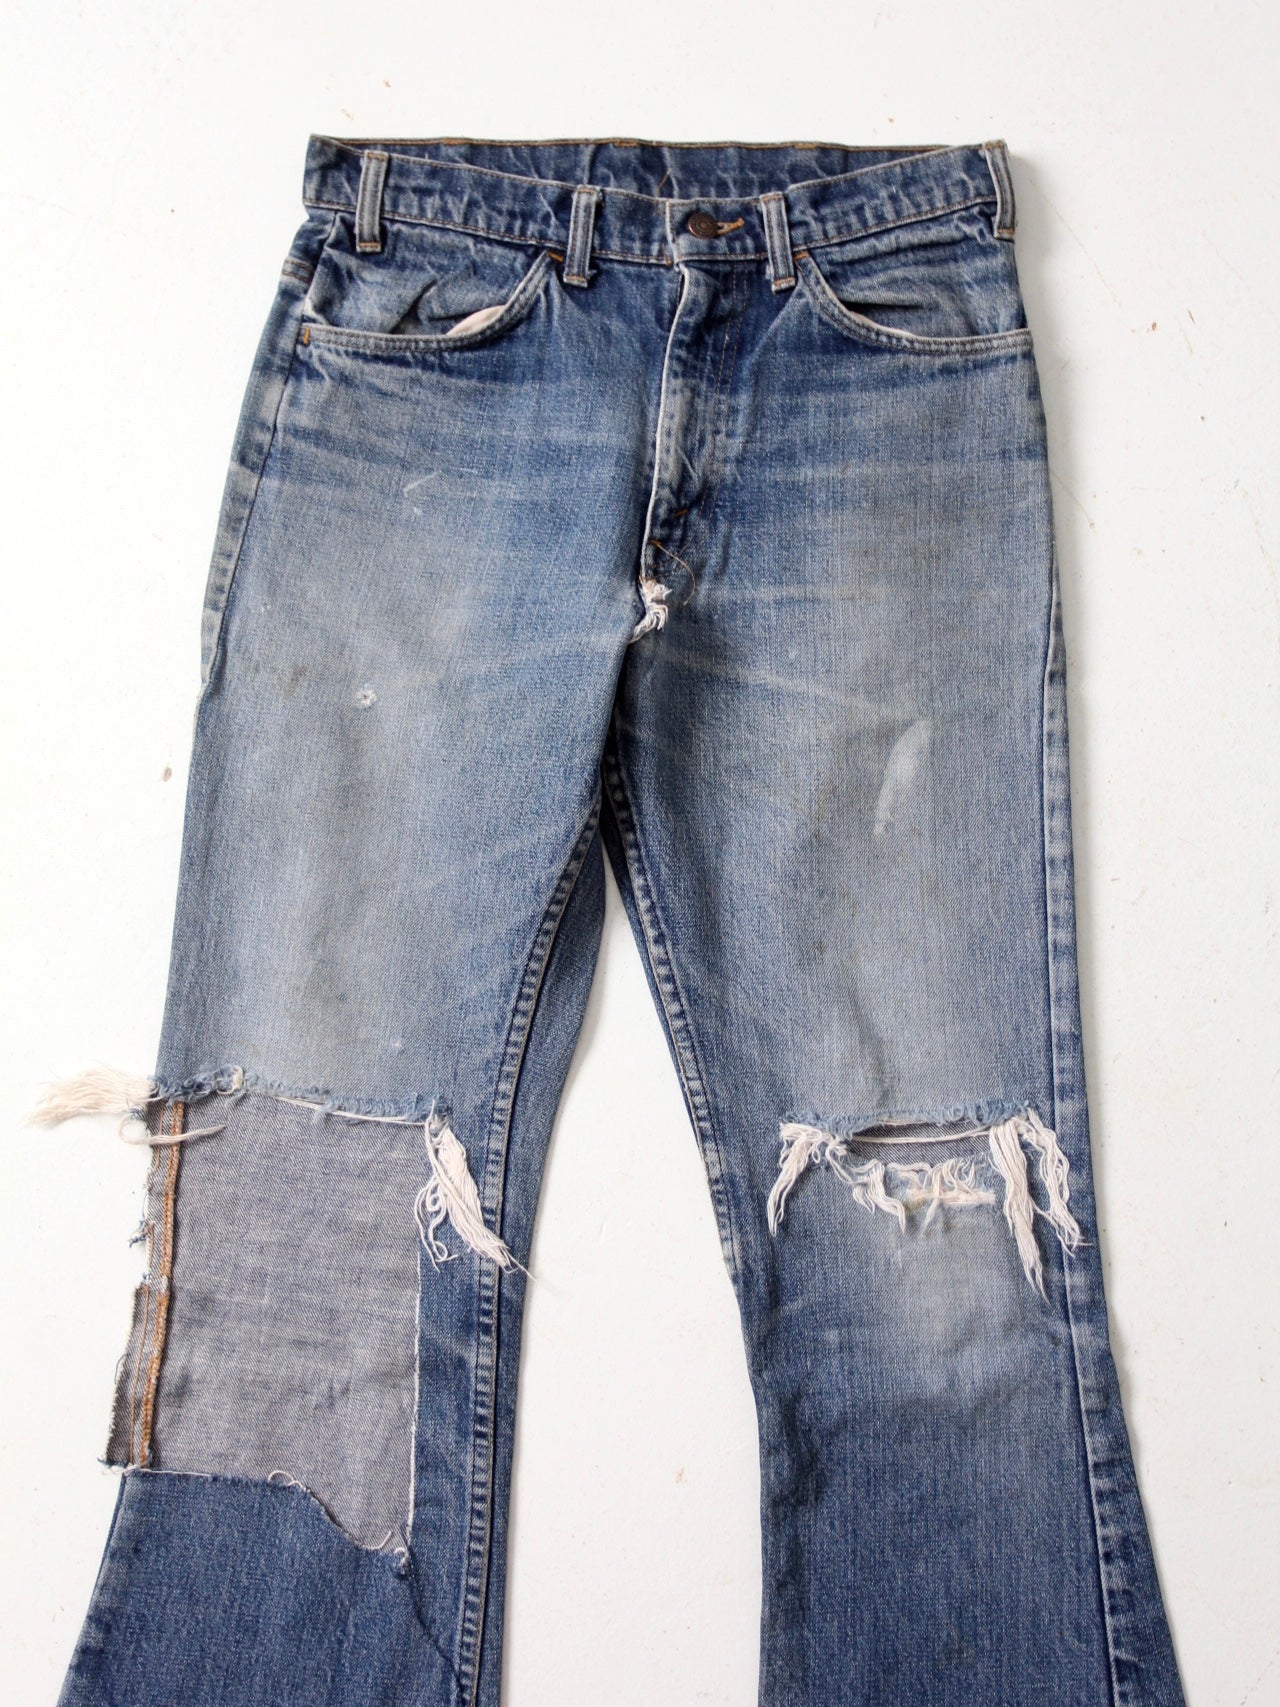 vintage Levis jeans, 31 x 29